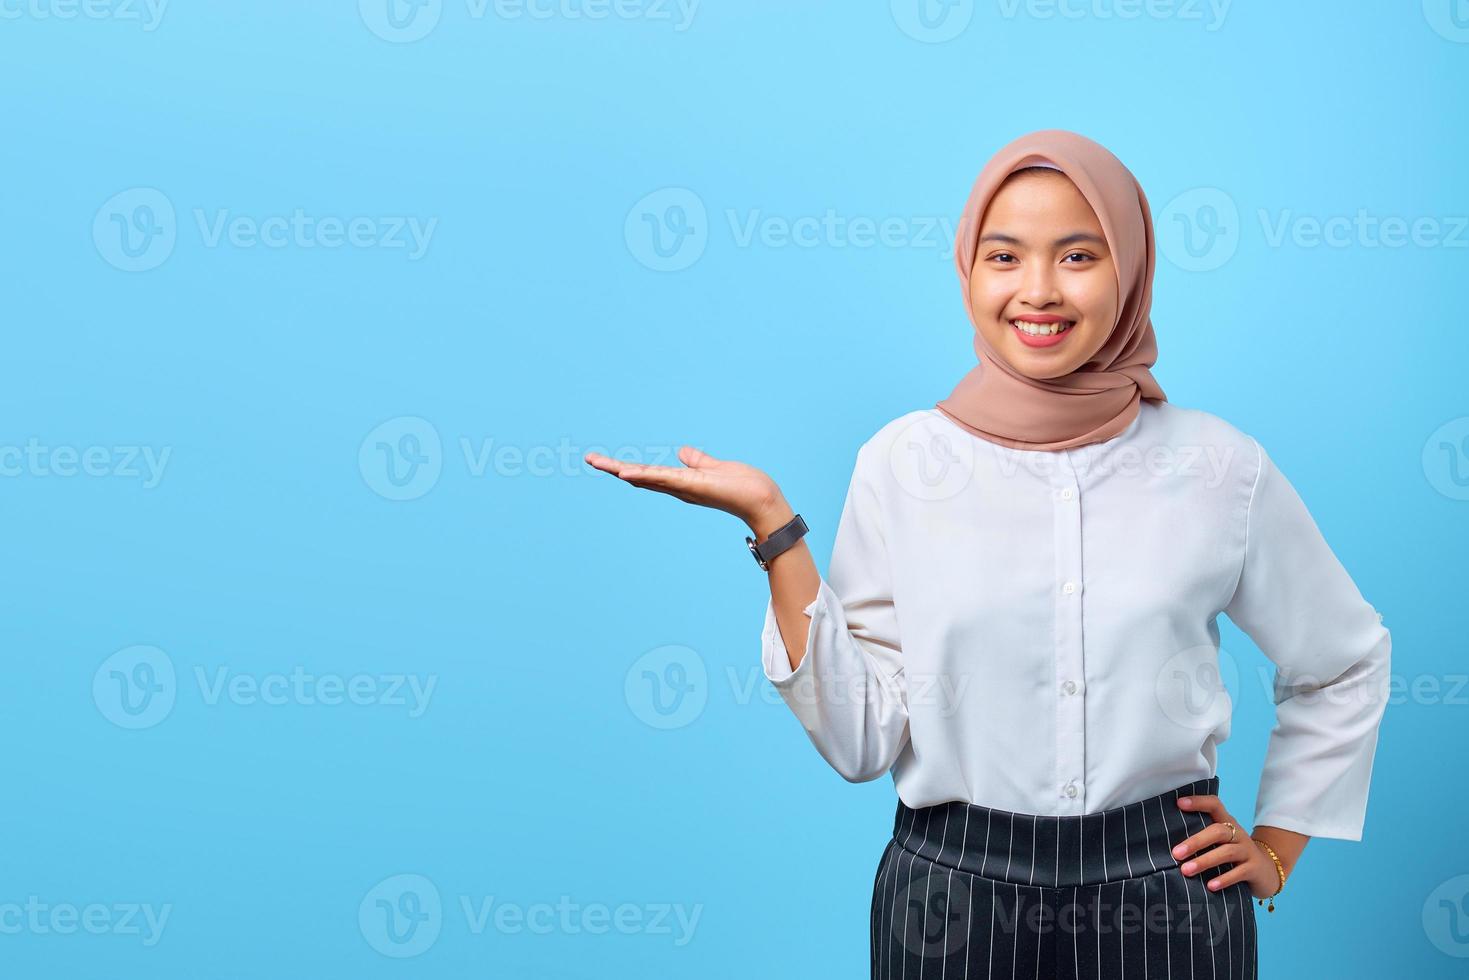 ritratto di giovane donna asiatica sorridente che presenta prodotto su sfondo blu foto